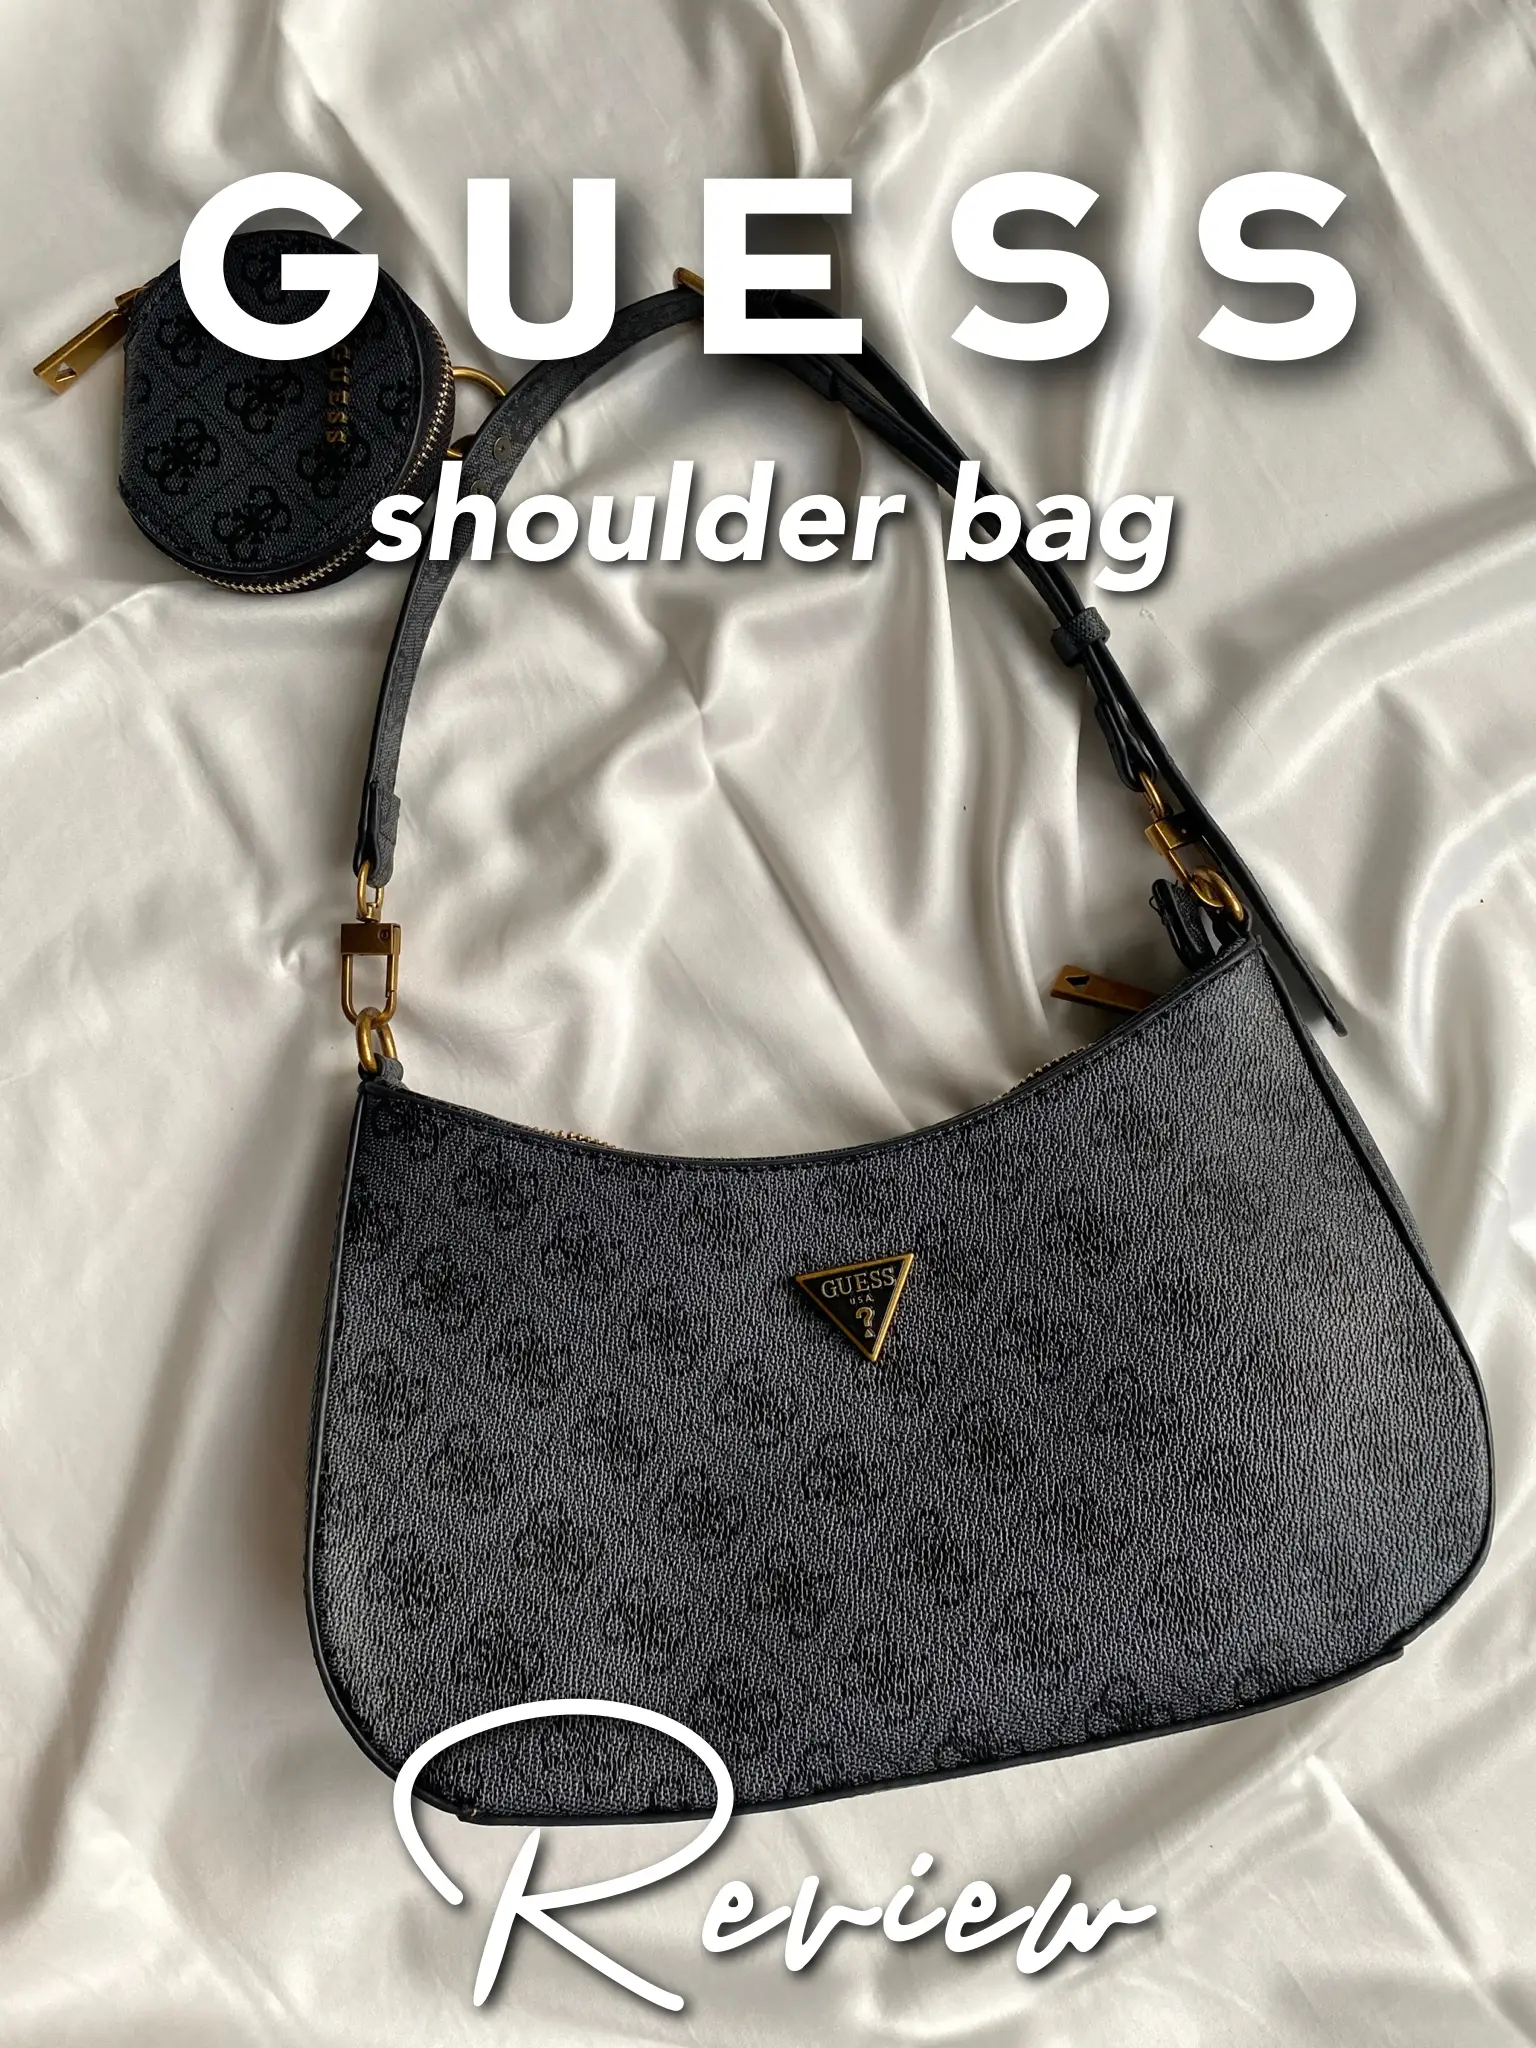 GUESS Noelle Shoulder Bag Review